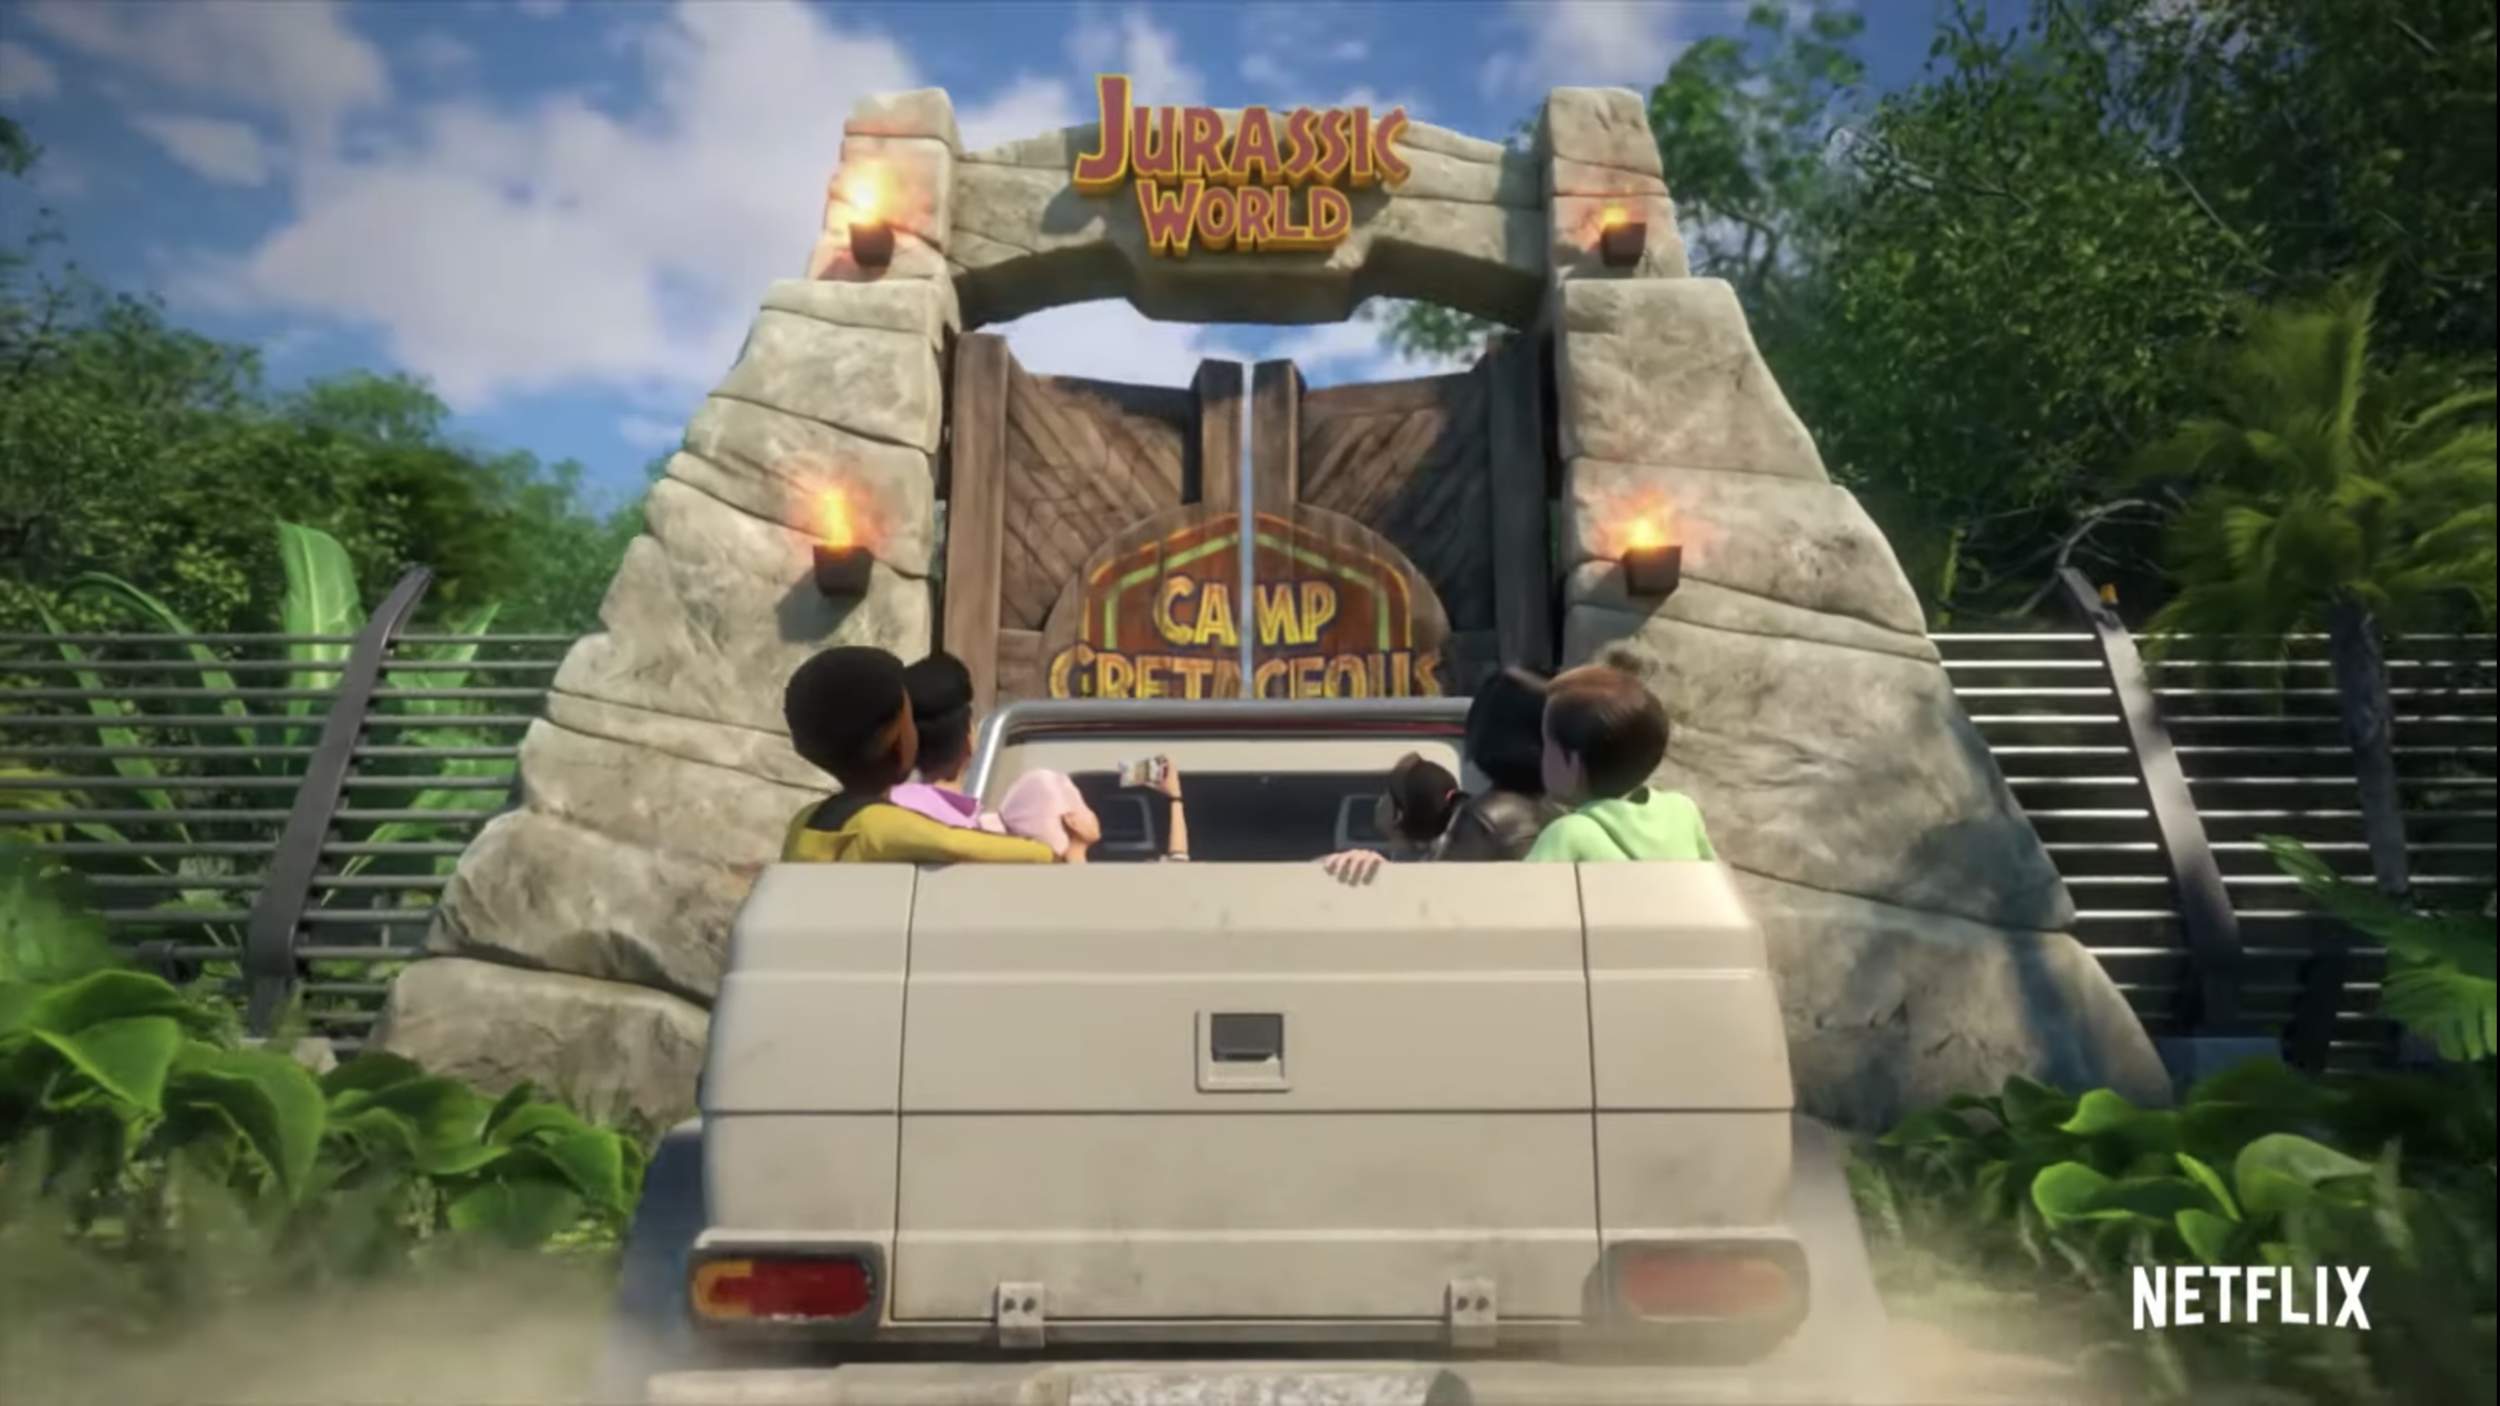 Jurassic World Camp Cretaceous Teaser Trailer Drops Full Trailer Breakdown The Jurassic Park Podcast jurassic world camp cretaceous teaser